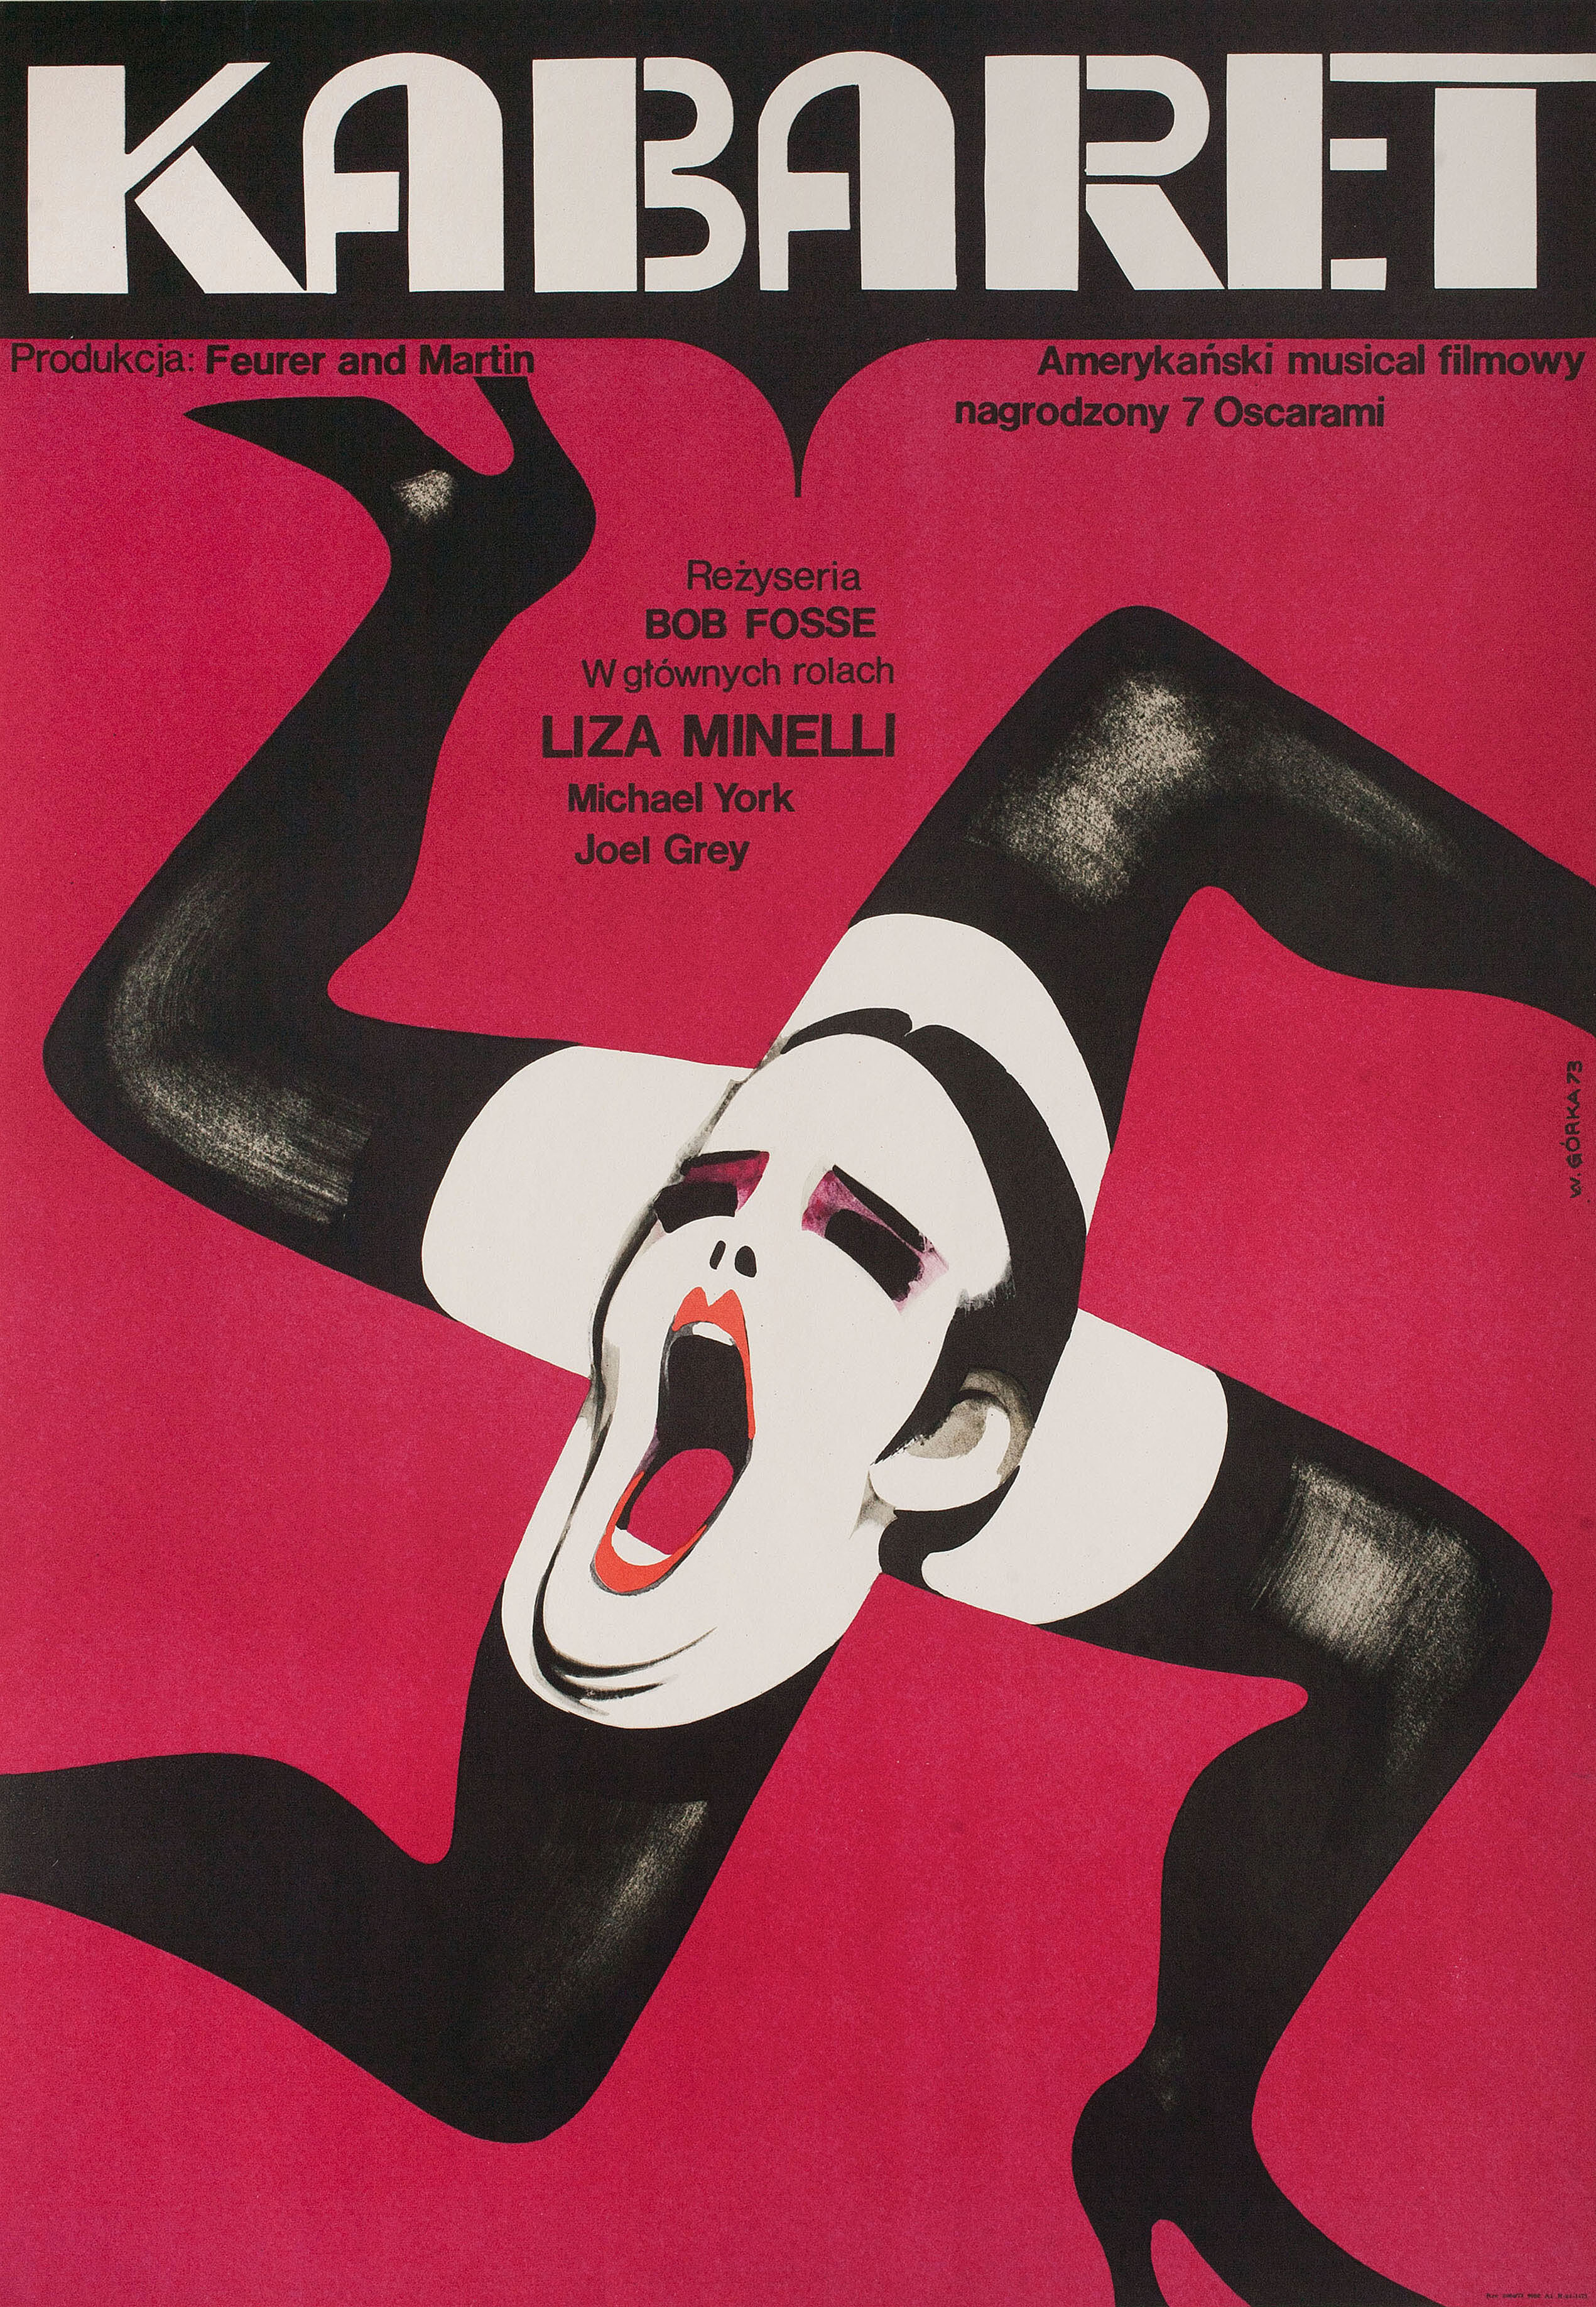 Кабаре (Cabaret, 1972), режиссёр Боб Фосс, польский постер к фильму, автор Виктор Горка (графический дизайн, 1973 год)